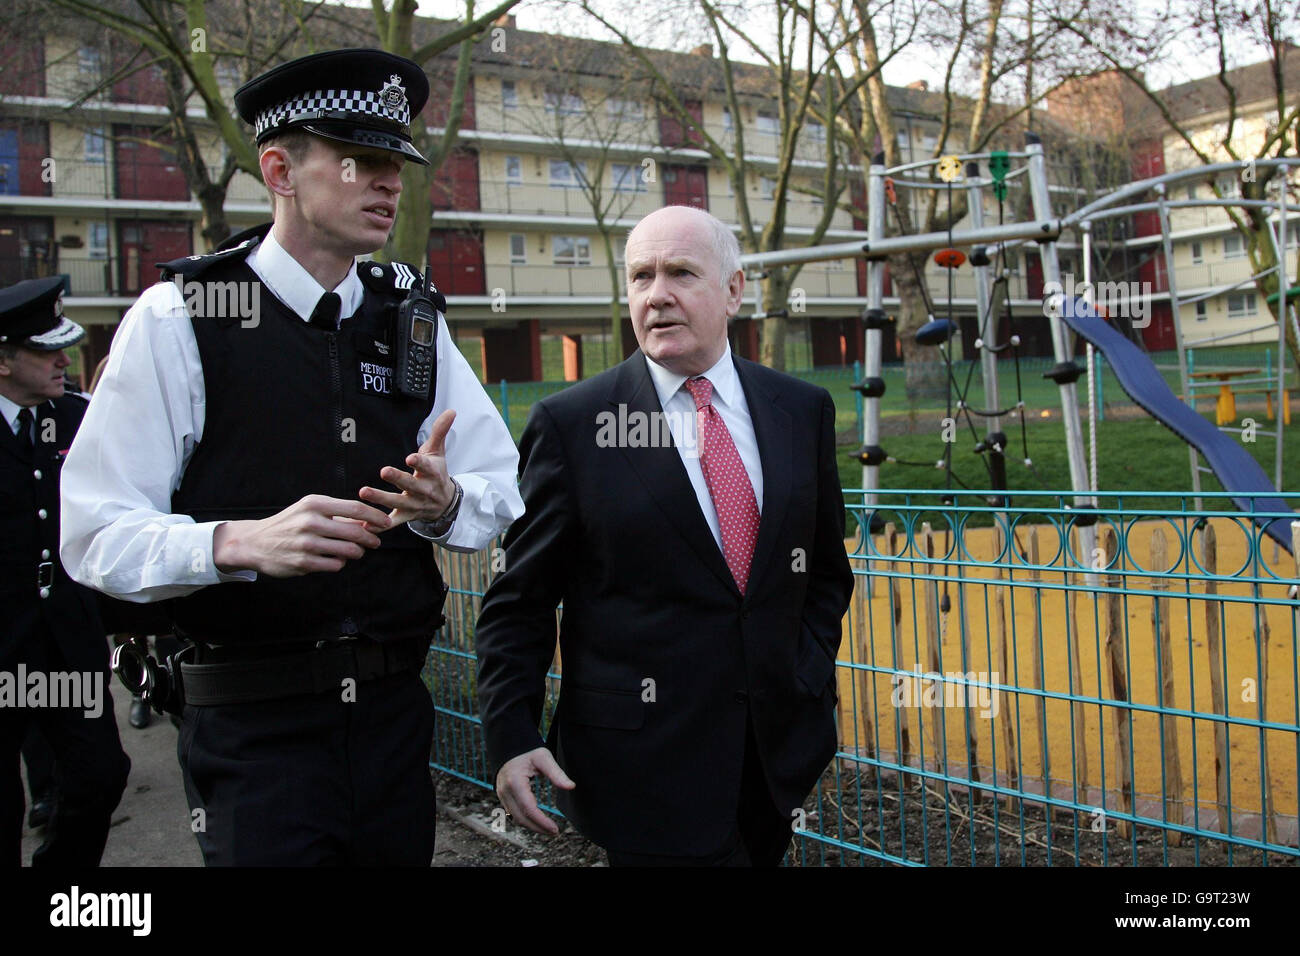 Il segretario di casa John Reid (a destra) parla al poliziotto Sgt. Steve Allen durante una visita alla tenuta Willard Housing a Clapham, nel sud di Londra. Foto Stock